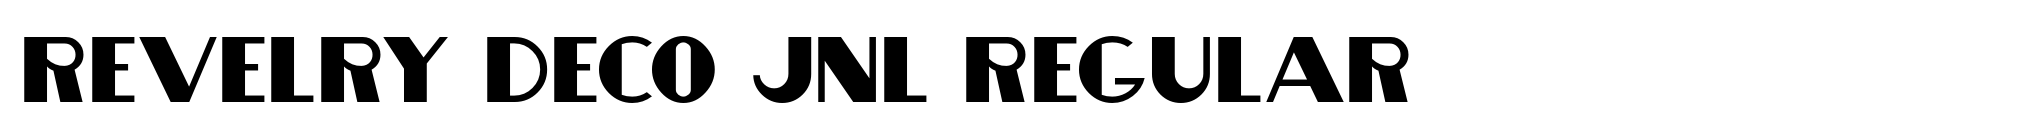 Revelry Deco JNL Regular image